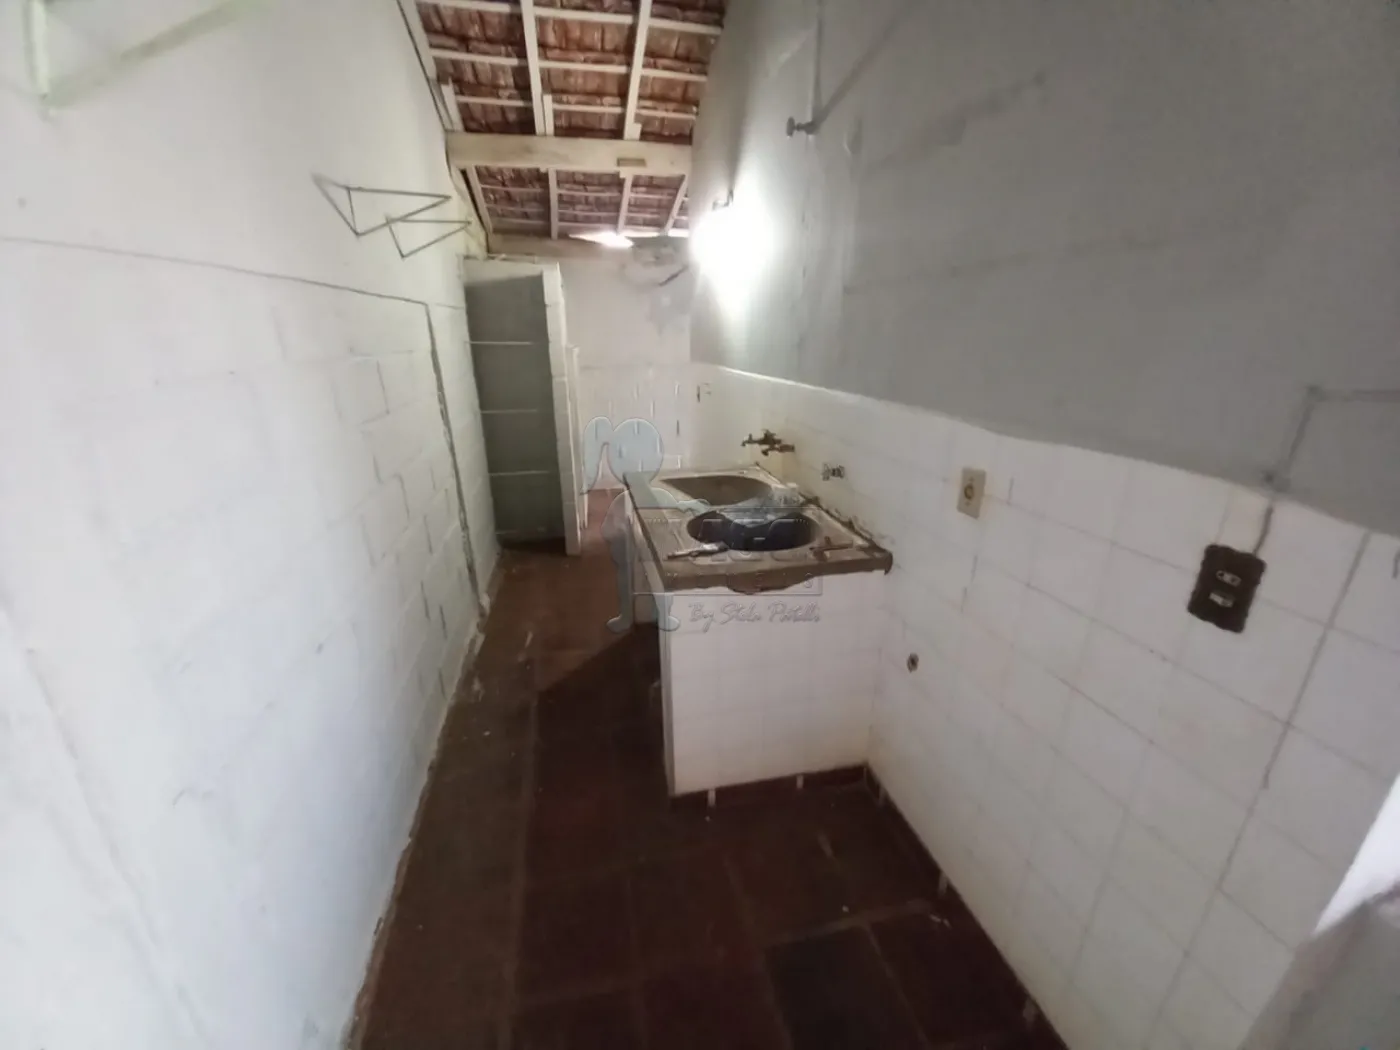 Alugar Casa / Padrão em Ribeirão Preto R$ 1.700,00 - Foto 14